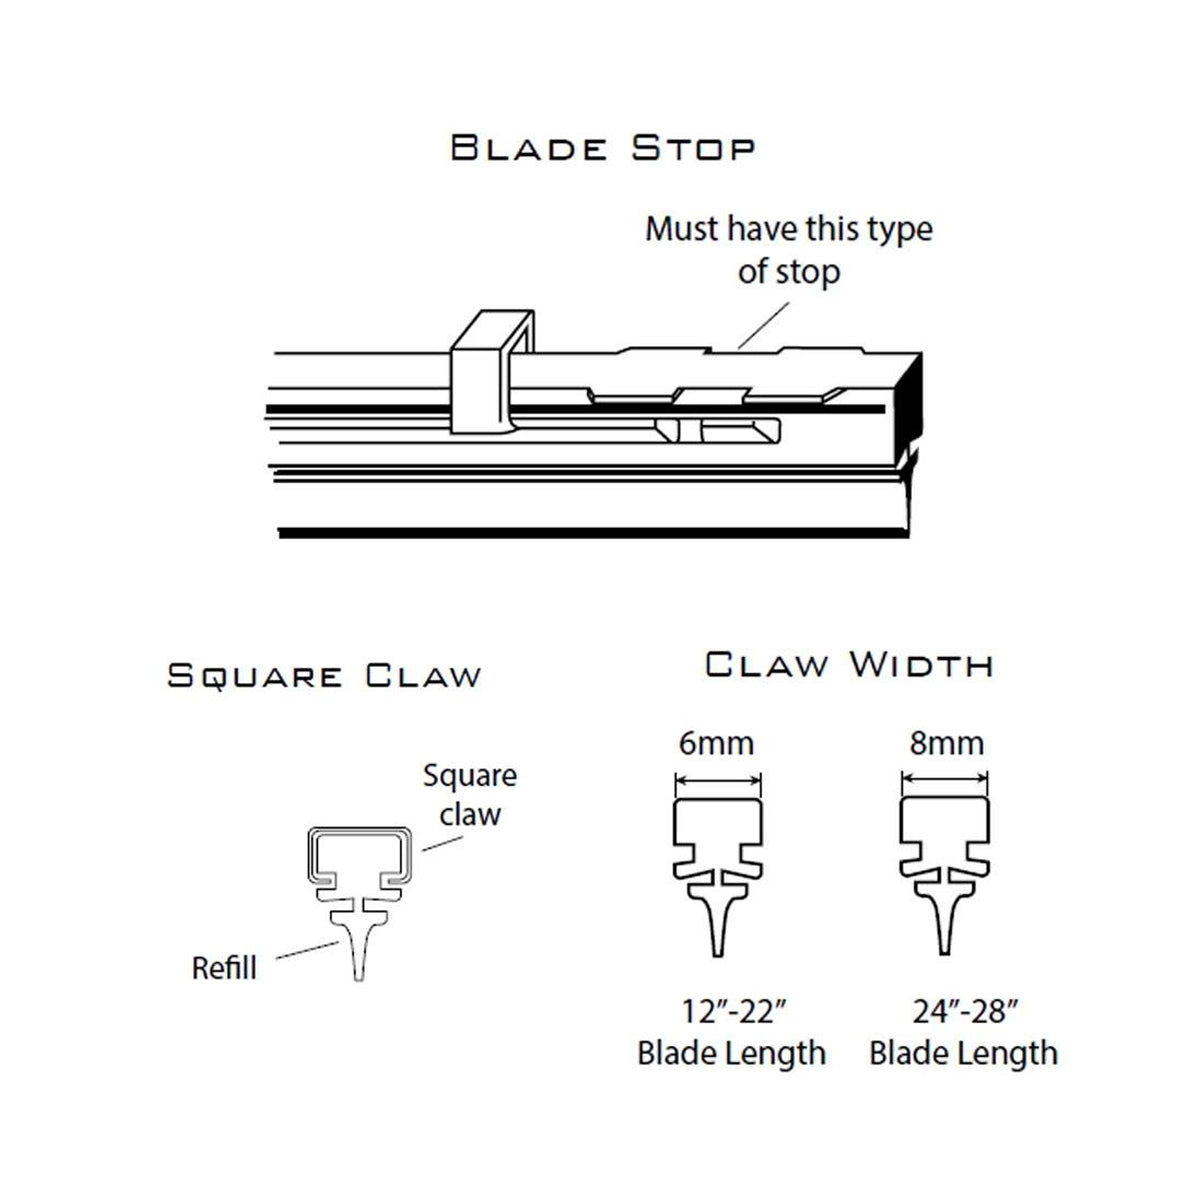 PIAA SILICONE WIPER REFILL for Radix & Aero Vogue Blade ( 21" ) ( 6mm ) (Barcode: 722935940533 )